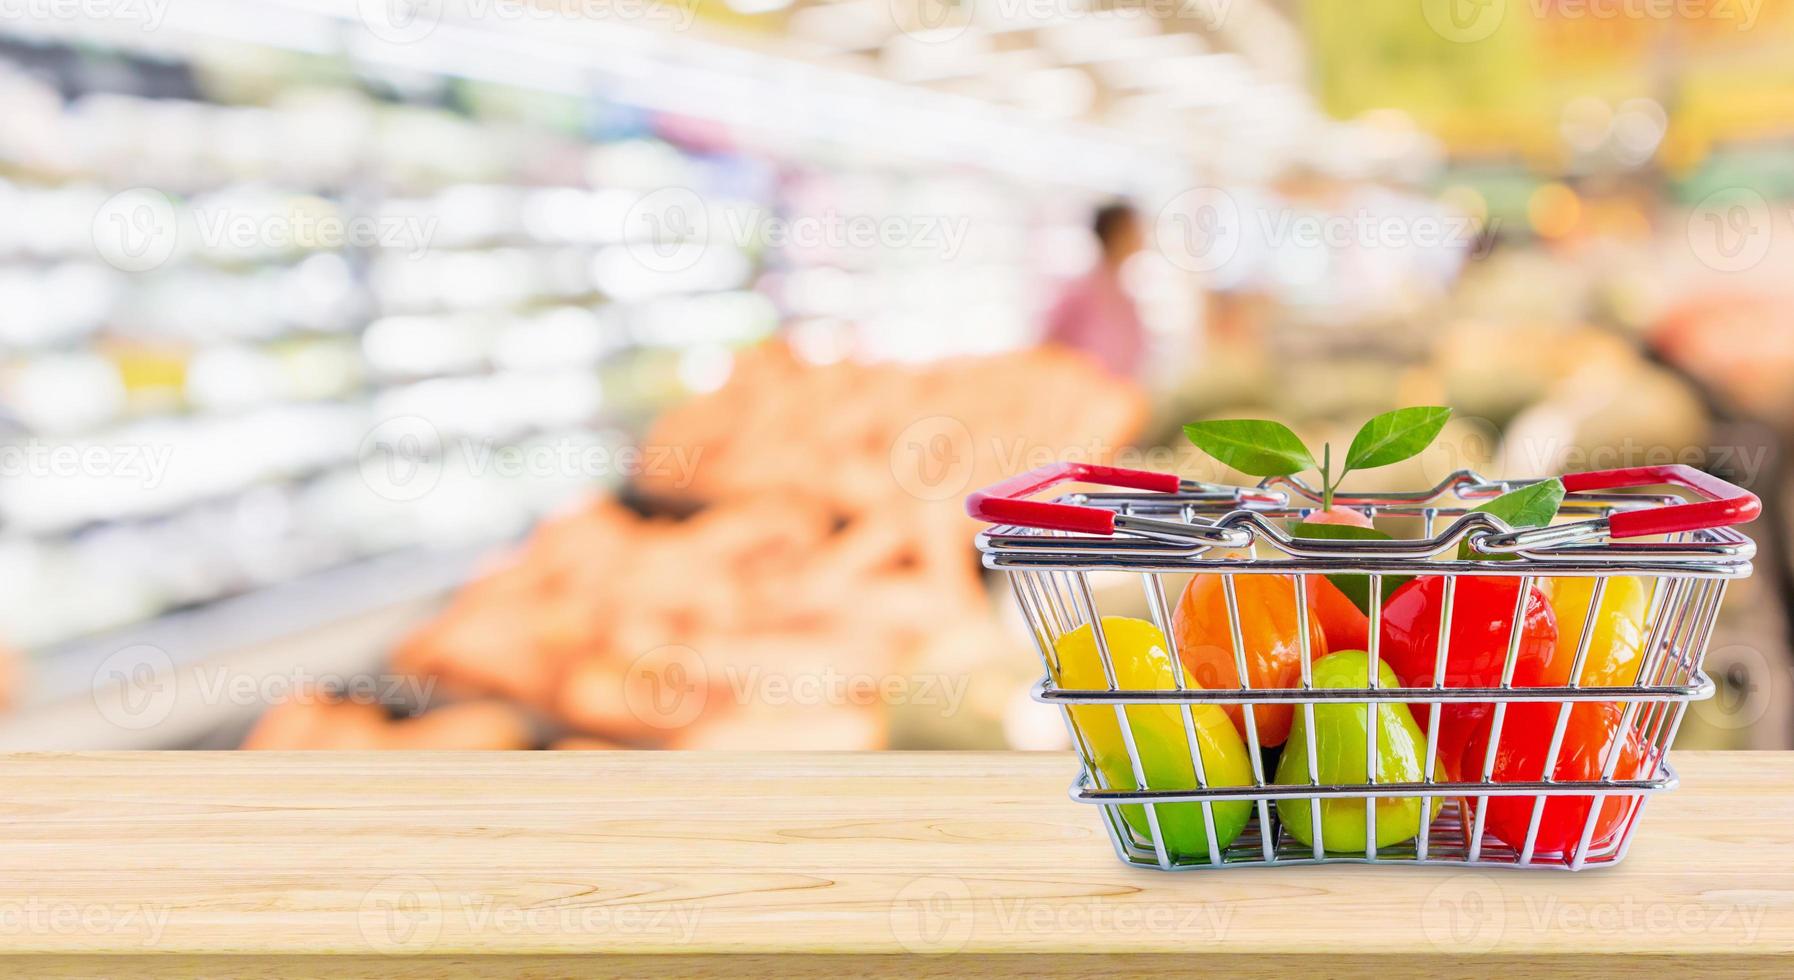 cesta de la compra con frutas en la mesa de madera sobre el fondo borroso del supermercado de la tienda de comestibles foto